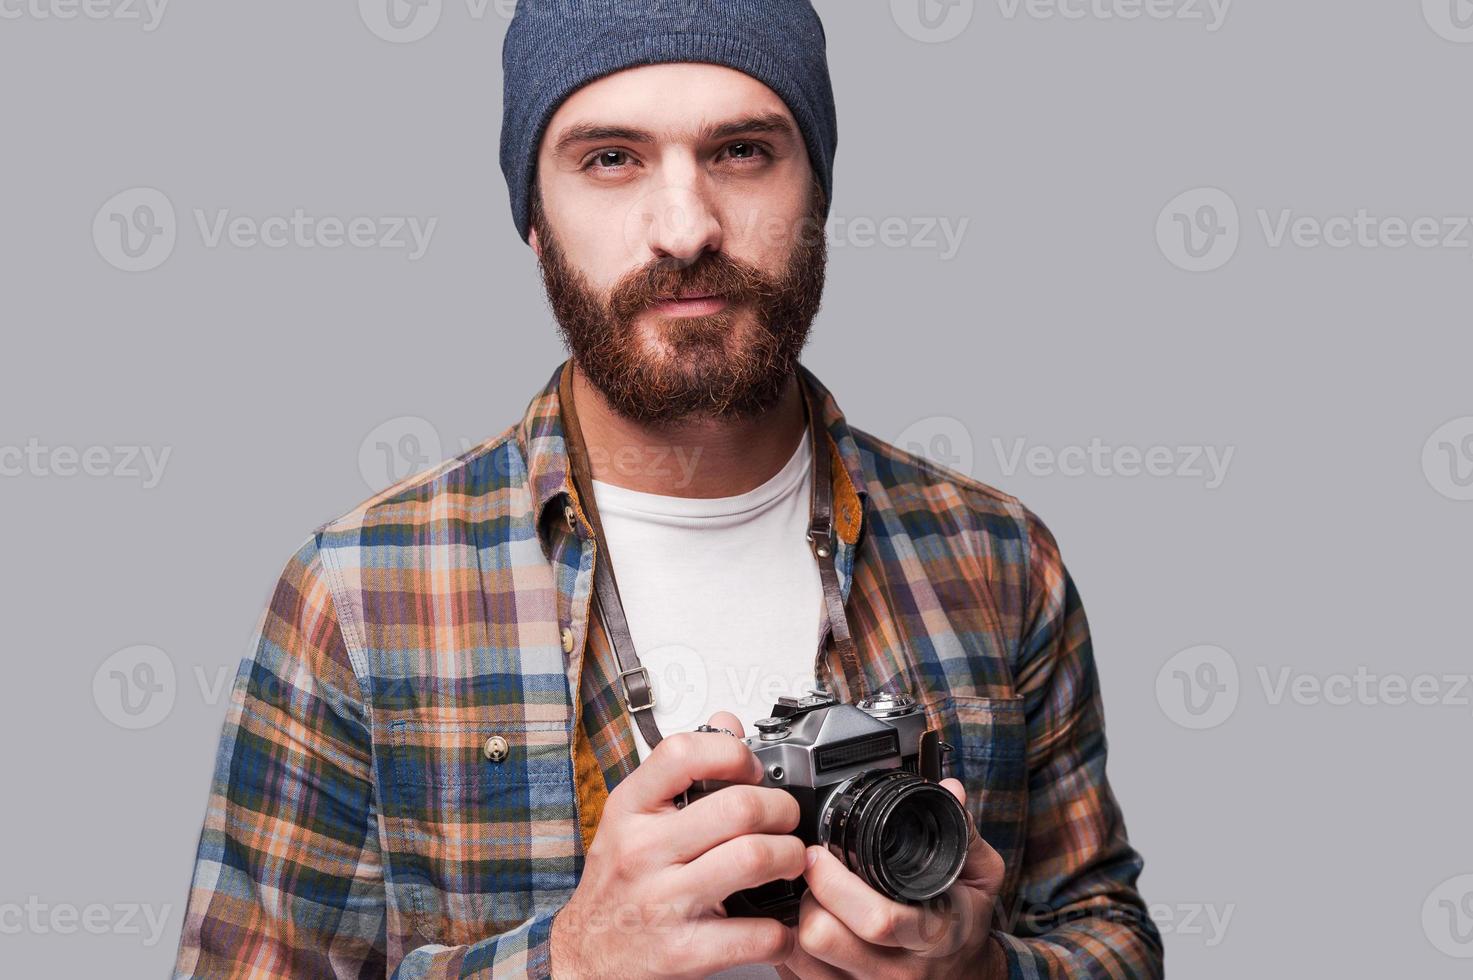 fotógrafo confiado. apuesto joven barbudo sosteniendo una cámara anticuada y mirando la cámara mientras se enfrenta a un fondo gris foto